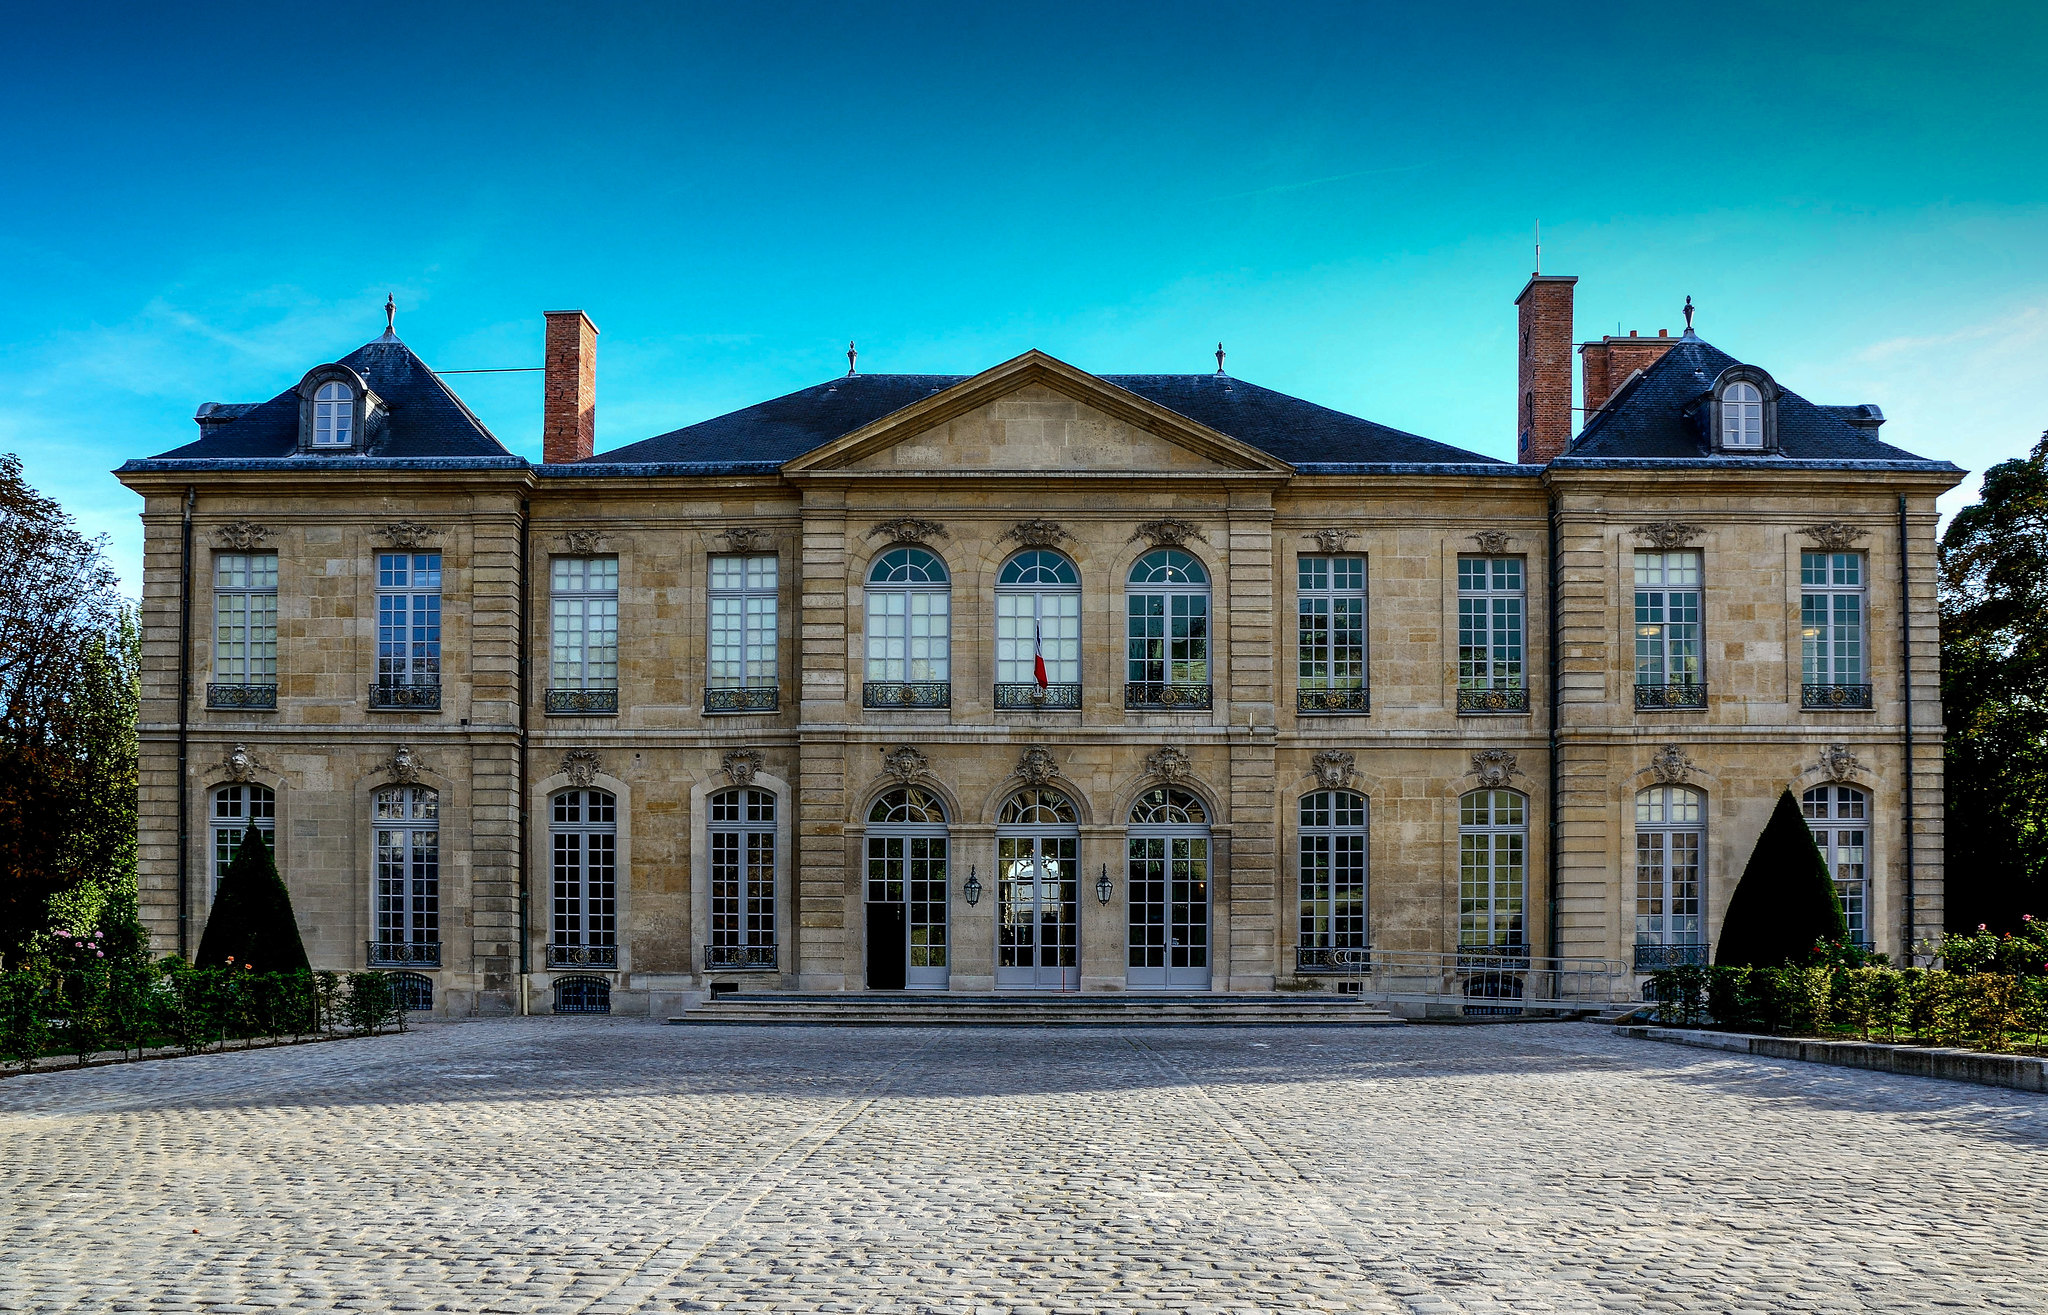 Musée Rodin, París